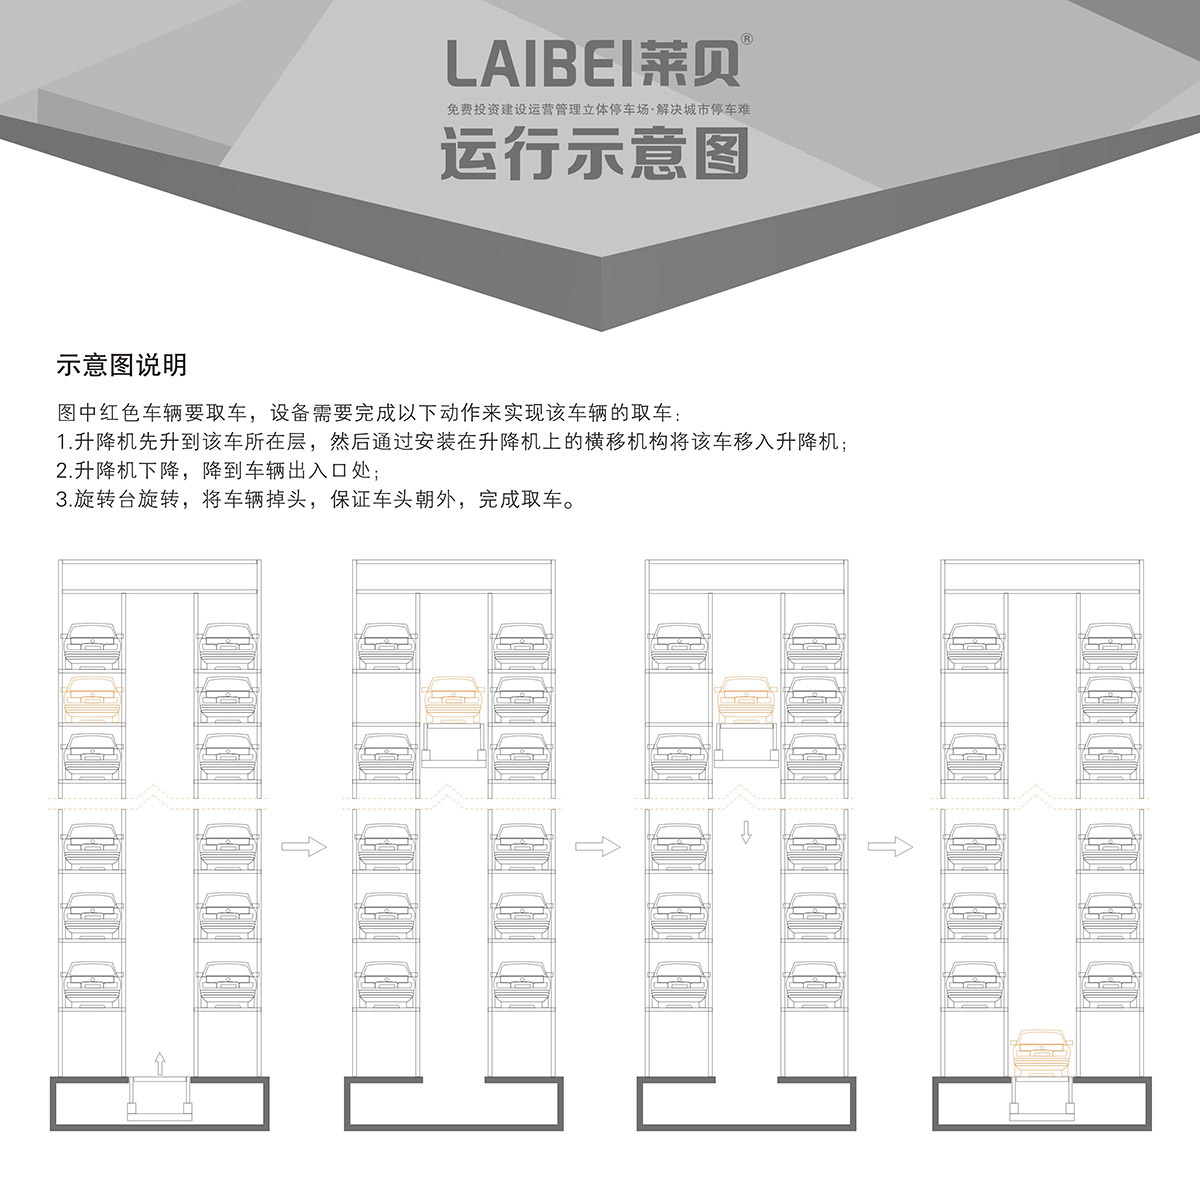 重庆PCS垂直升降立体停车设备运行示意图.jpg